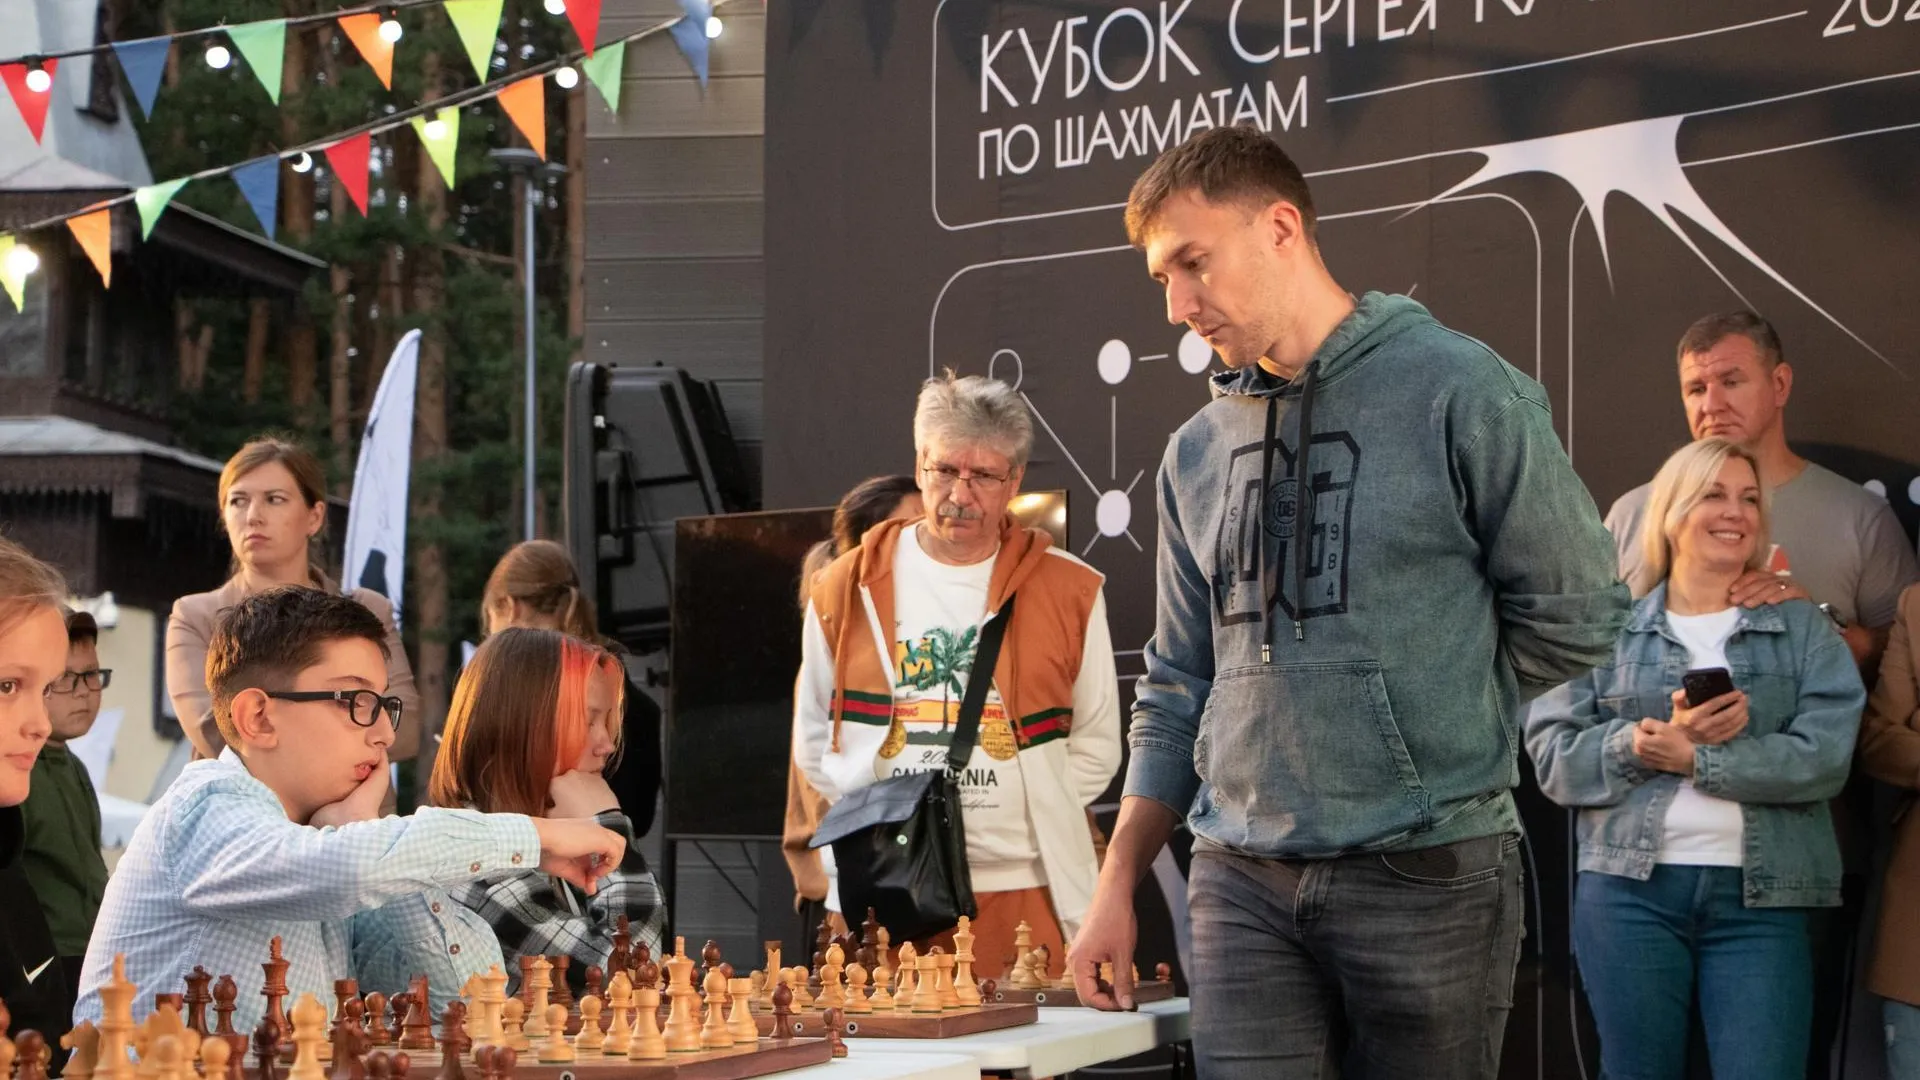 В Подмосковье состоится первый этап Кубка Сергея Карякина 21 июля